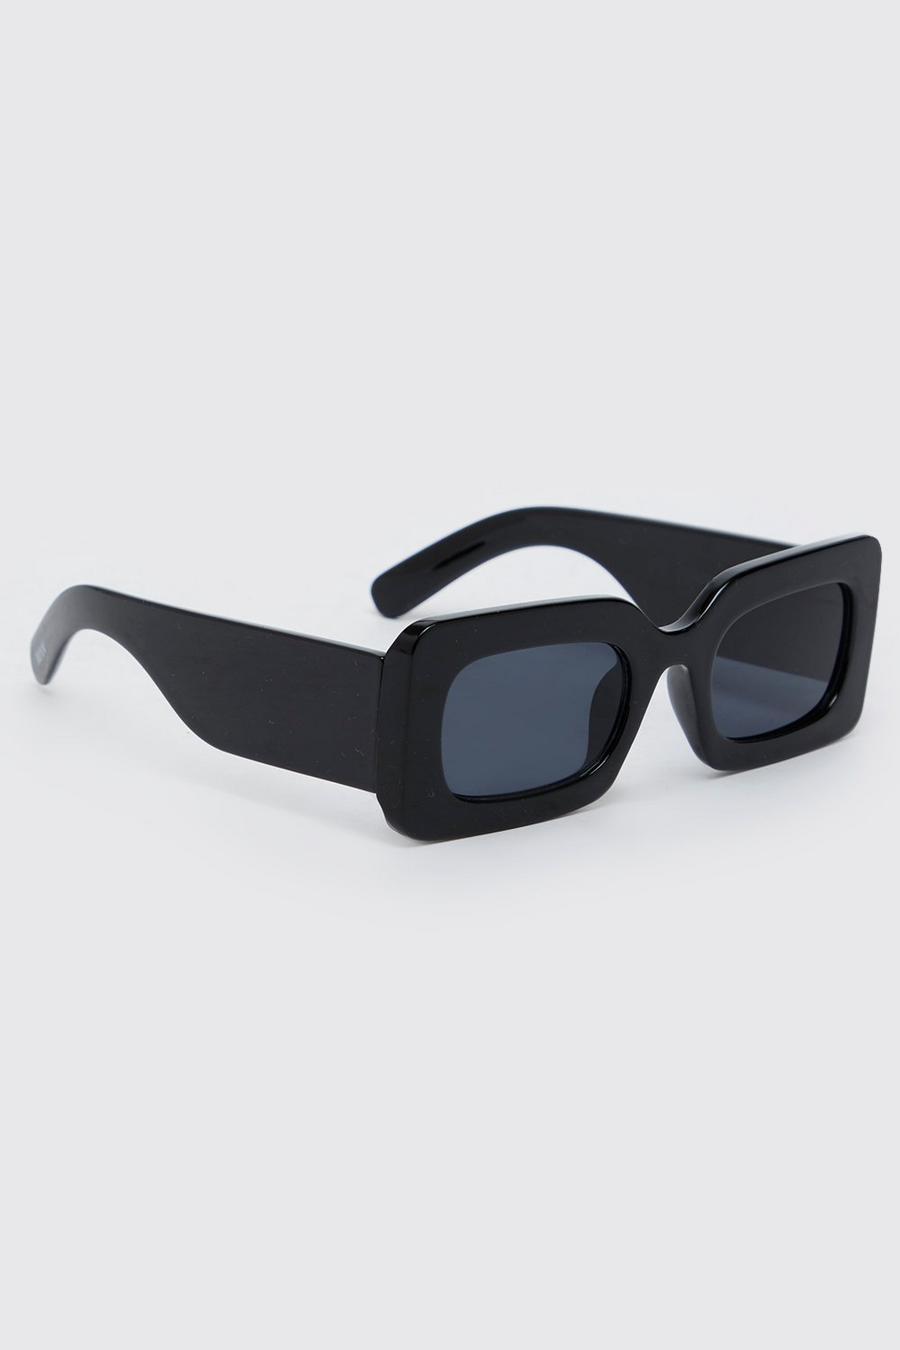 Gafas de sol recicladas de plástico gruesas rectangulares, Black negro